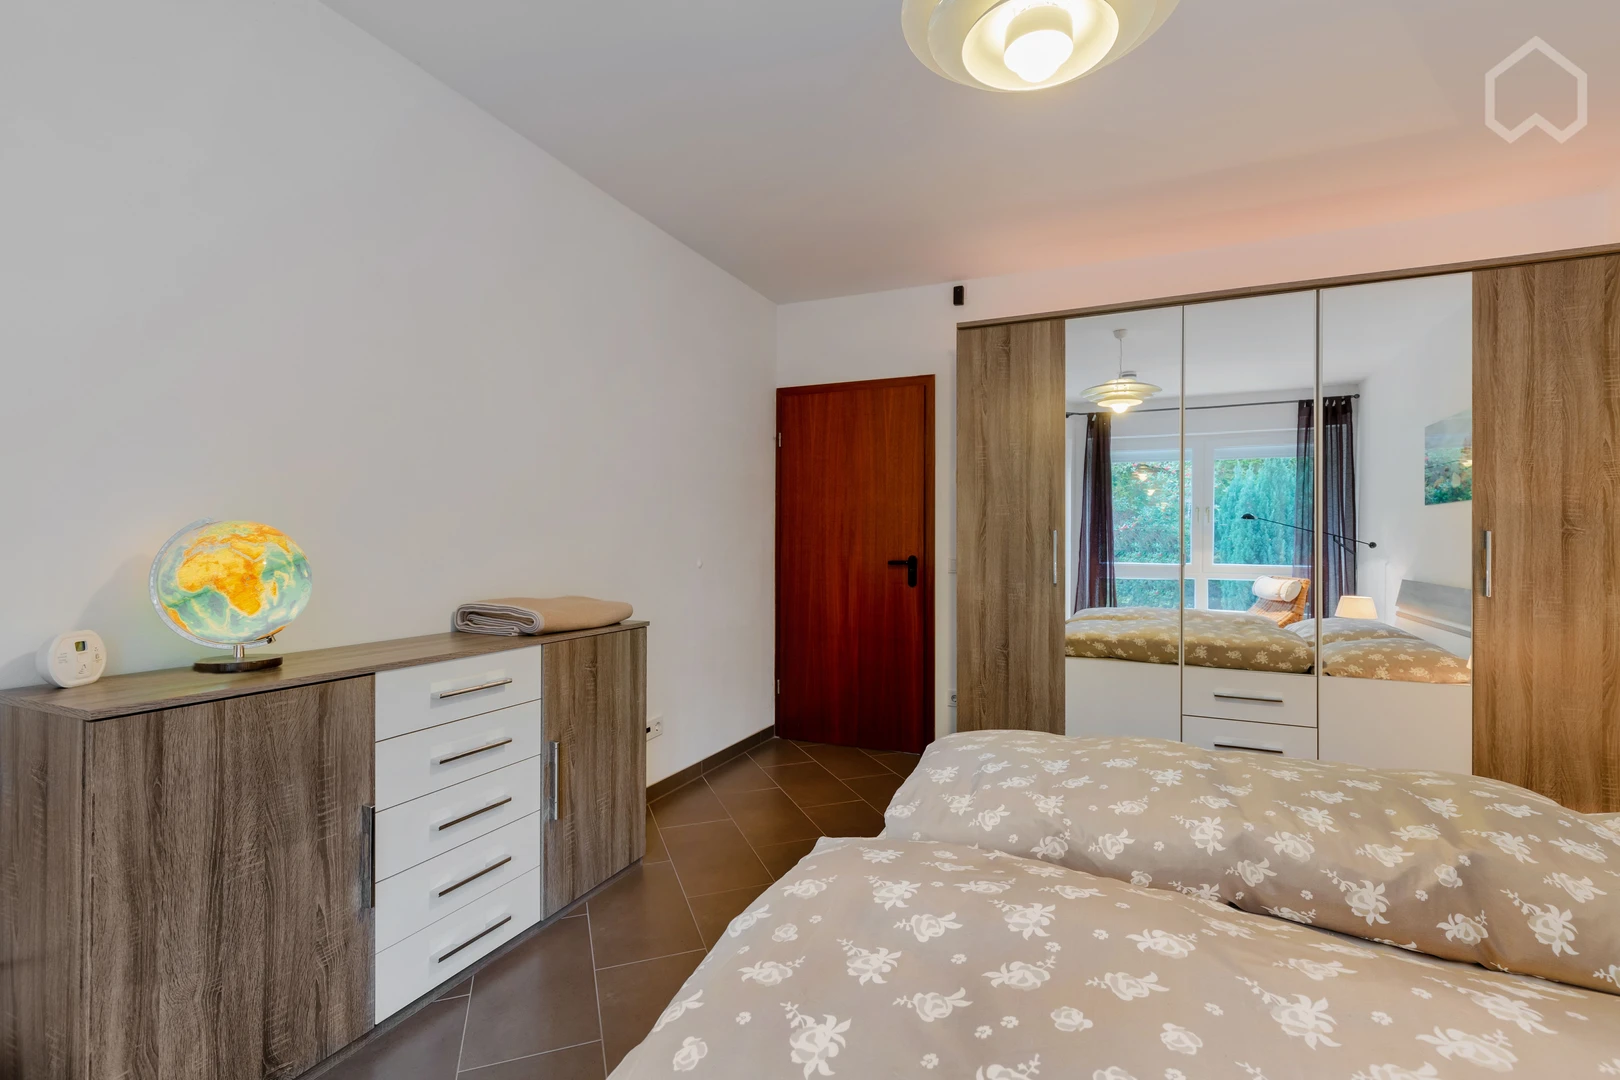 Habitación en alquiler con cama doble Düsseldorf